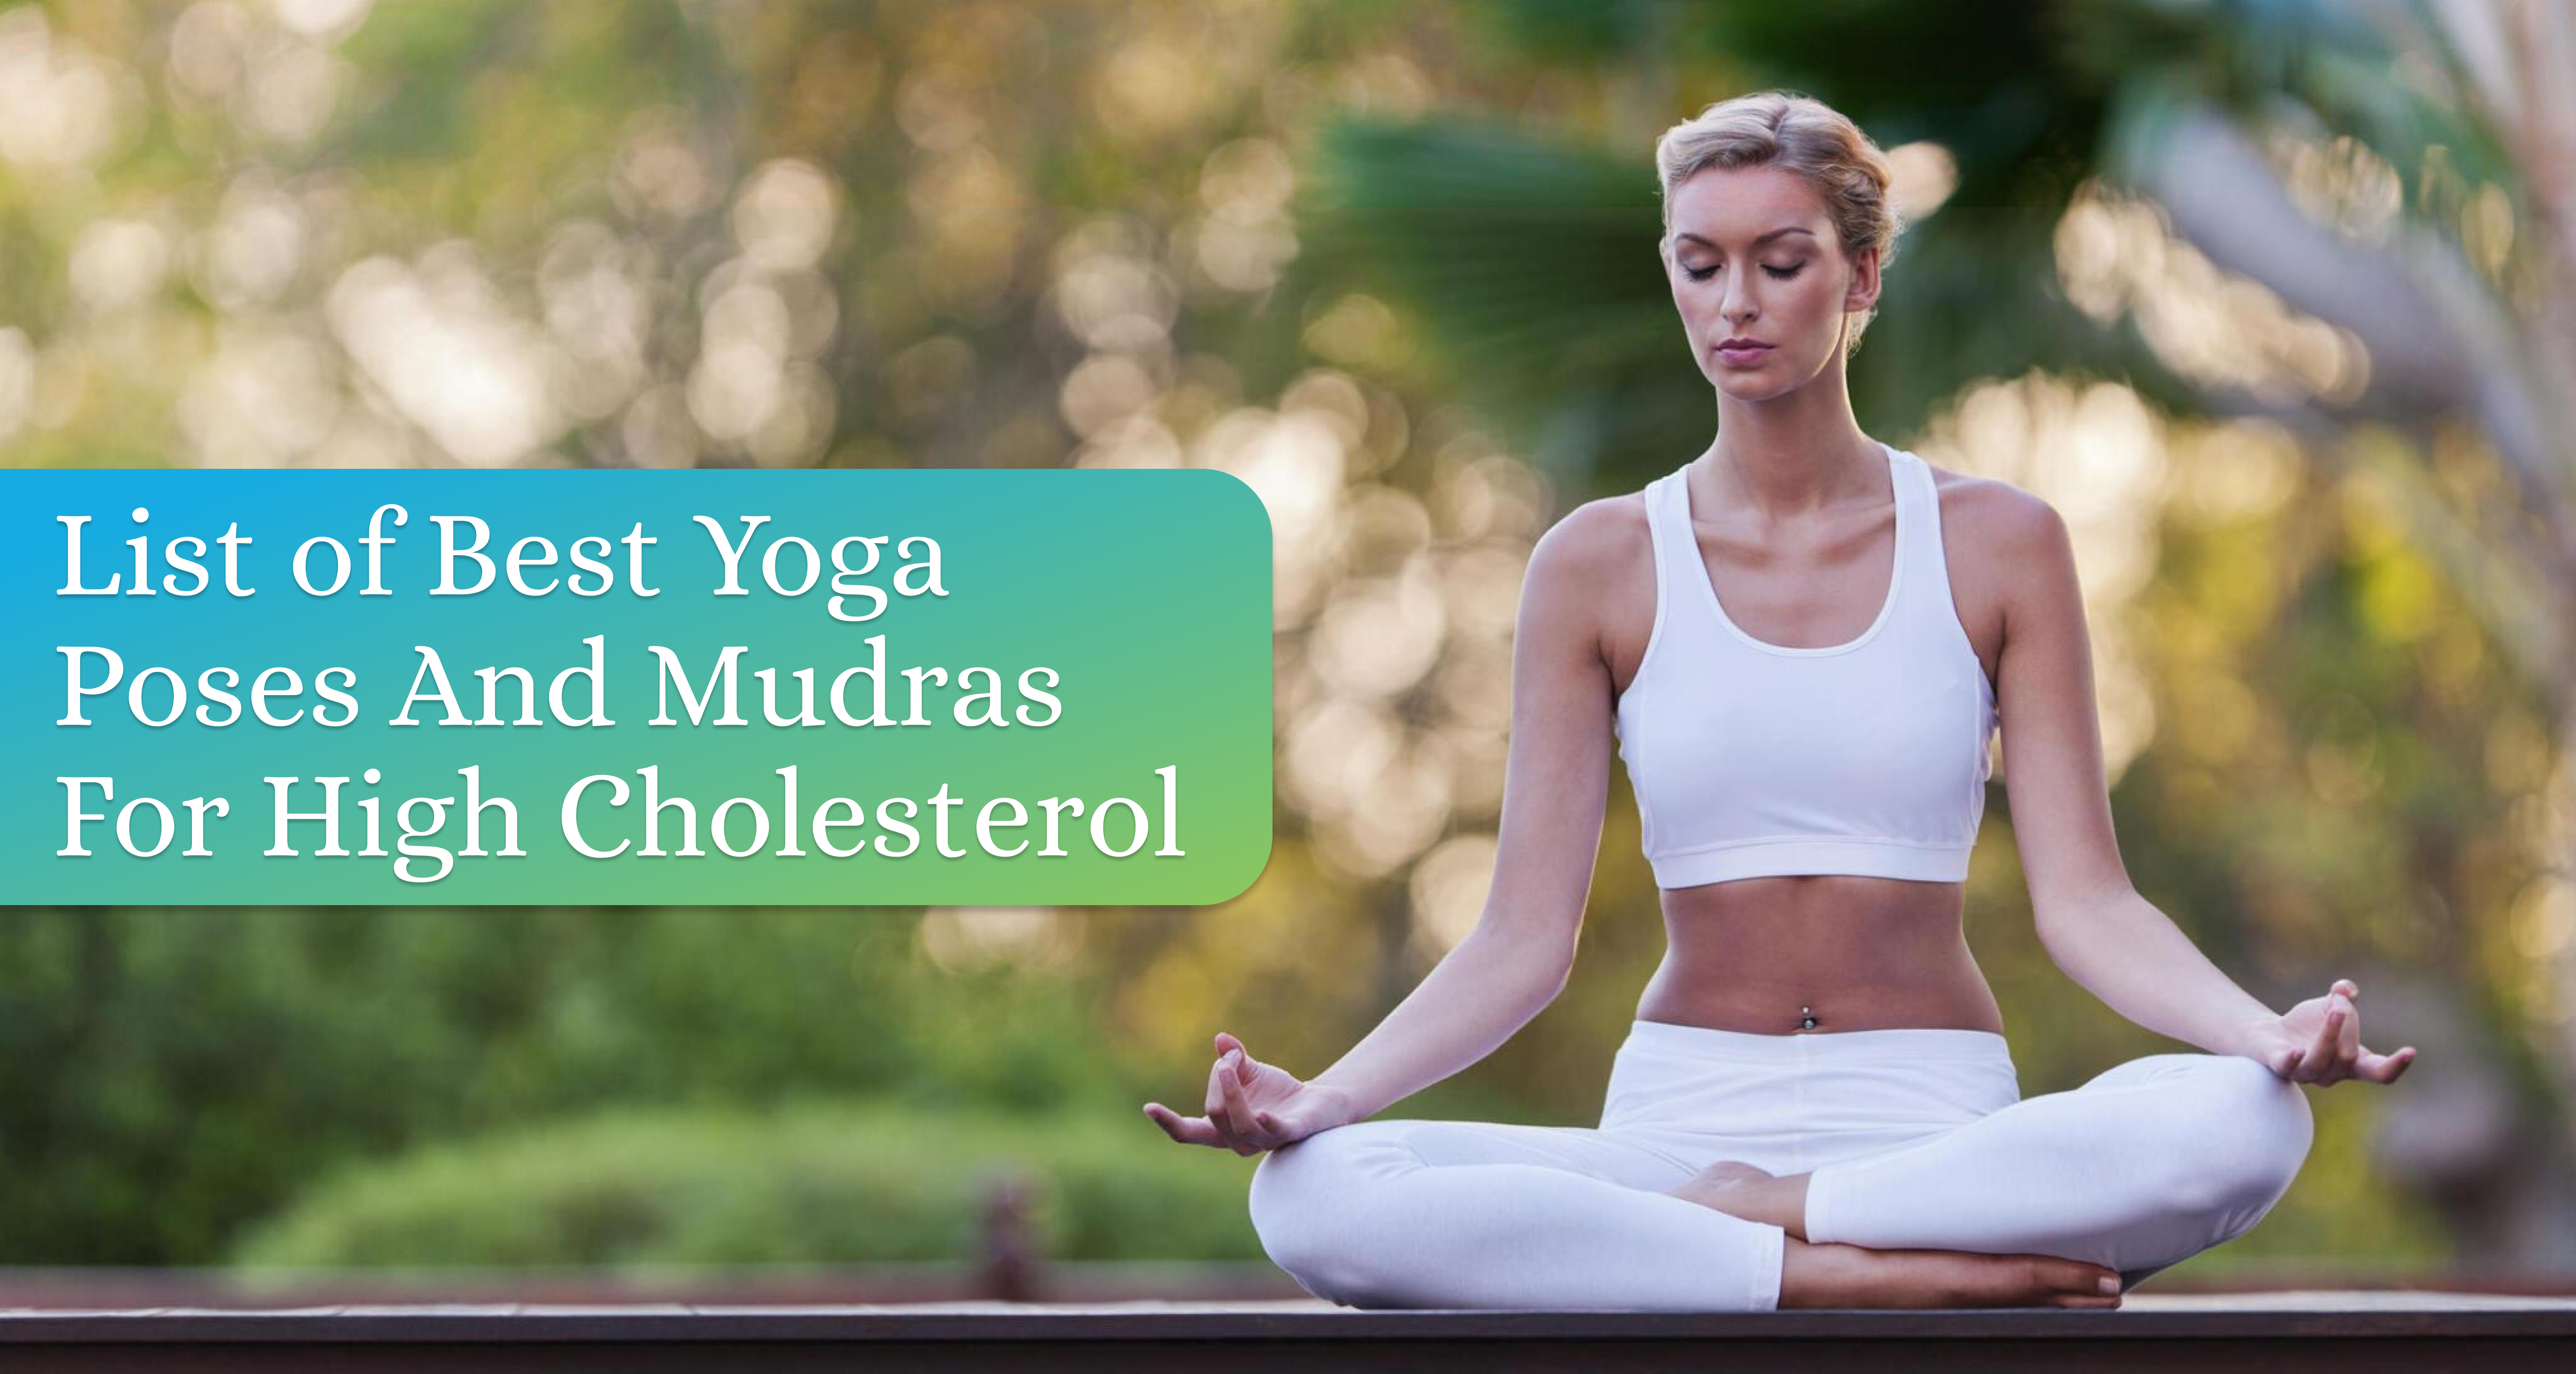 Do These 5 Yoga Asanas Daily To Reduce Bad Cholesterol Levels #yoga  #fitness #physicalhealth - YouTube